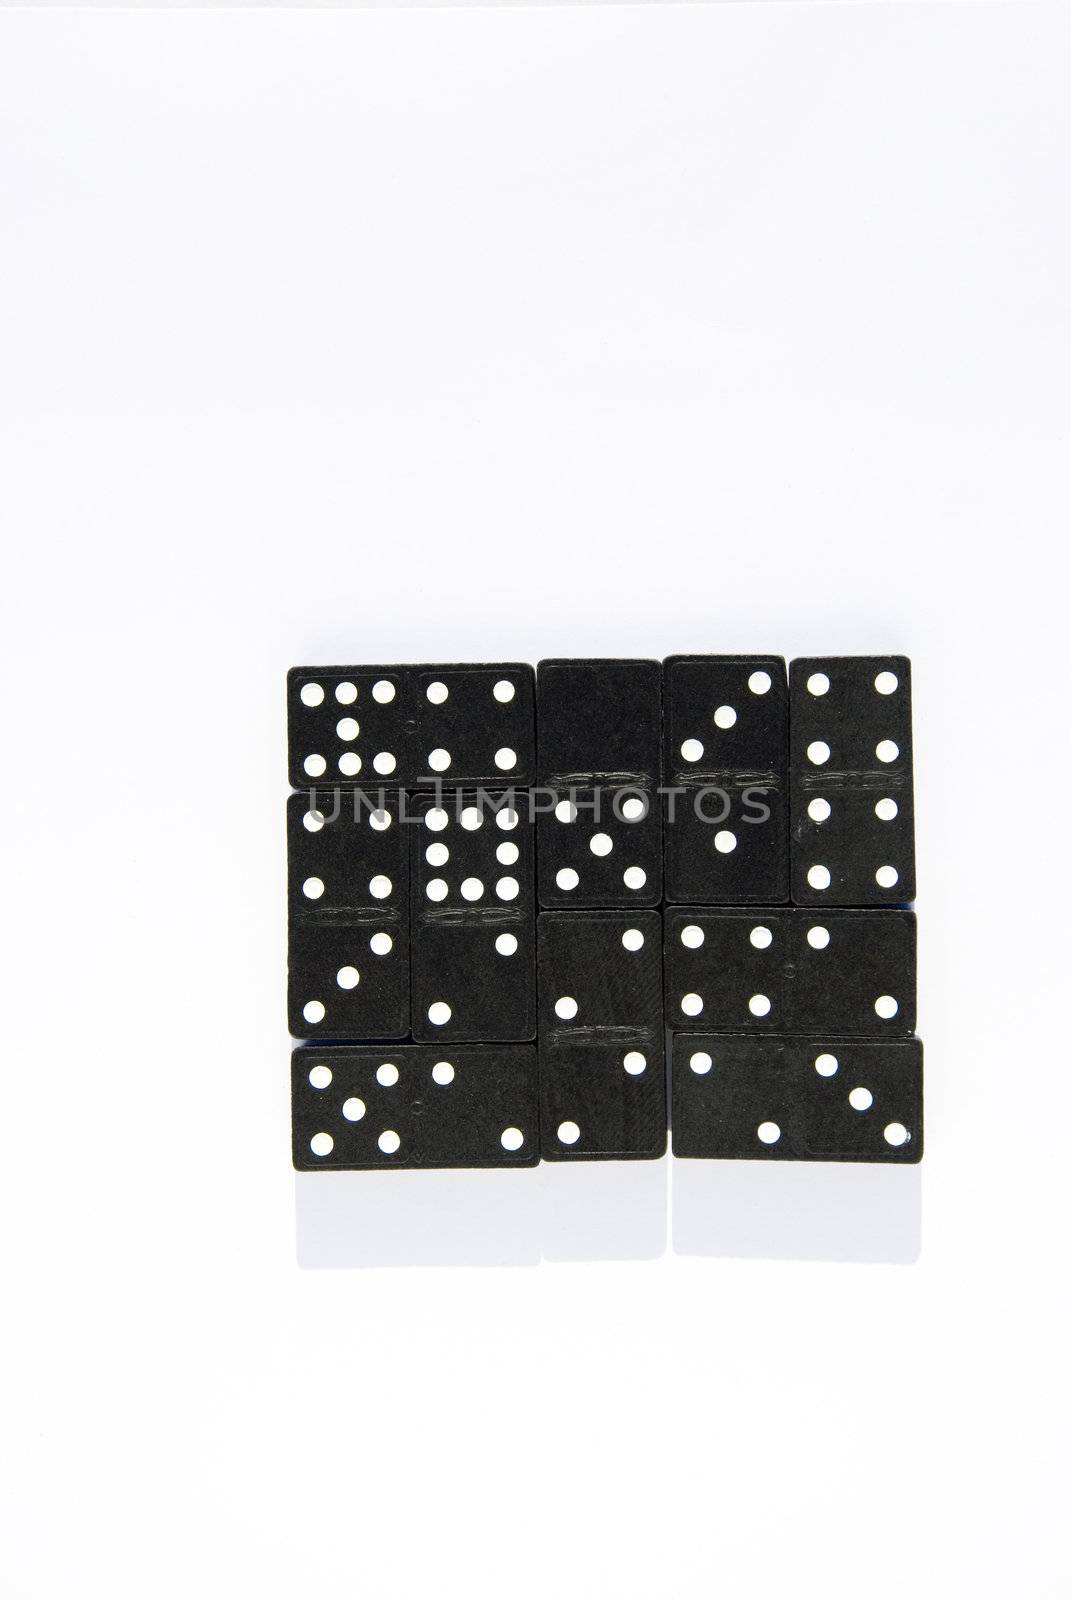 Black domino square blocks in a white background